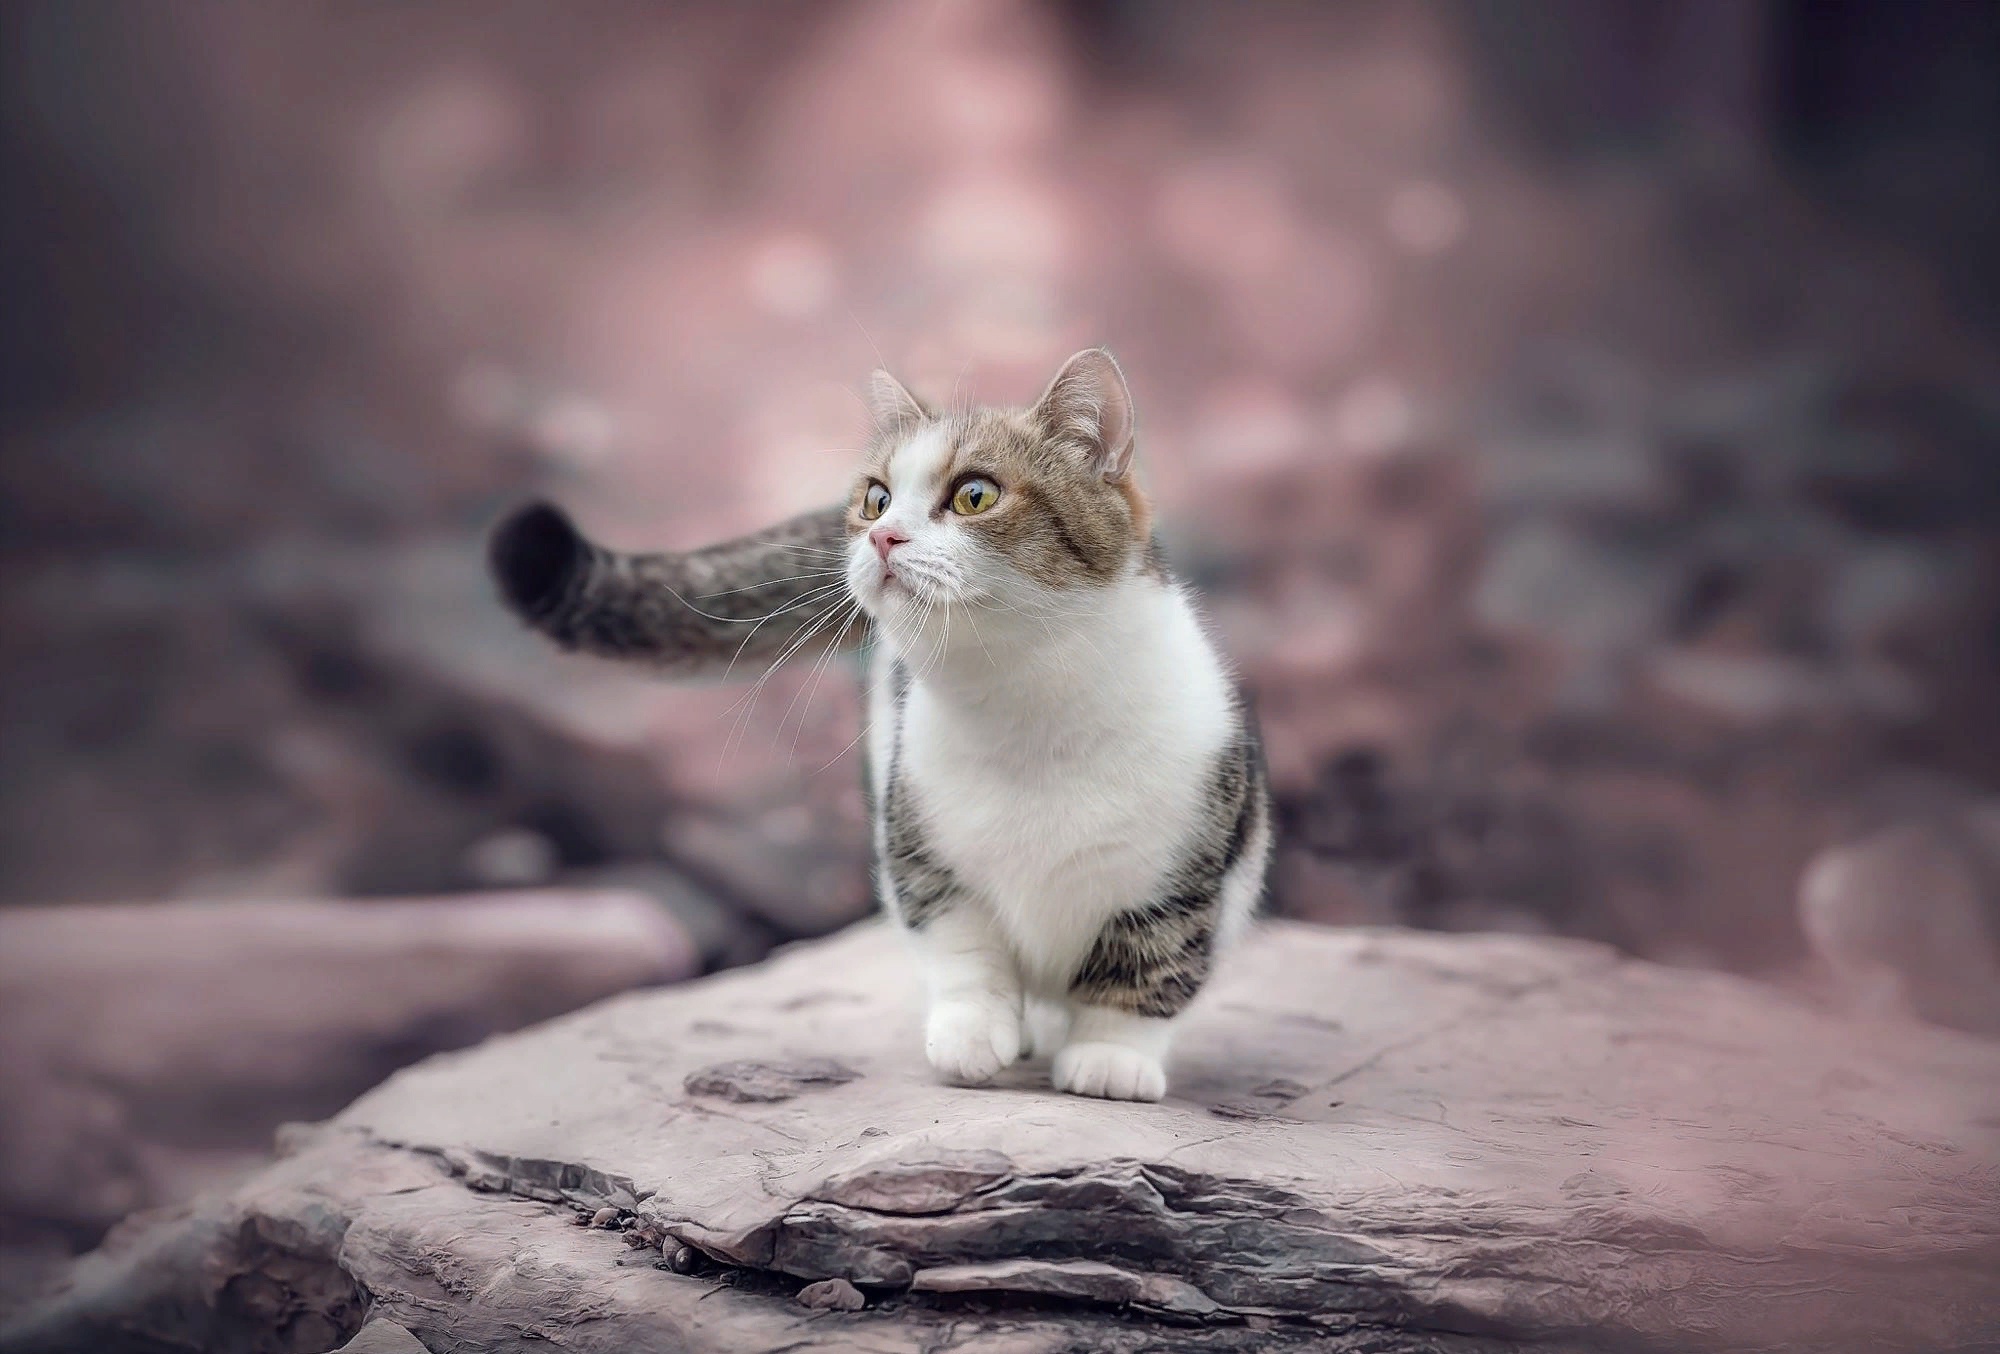 Descarga gratuita de fondo de pantalla para móvil de Animales, Gatos, Gato, Gatito, Bebe Animal.